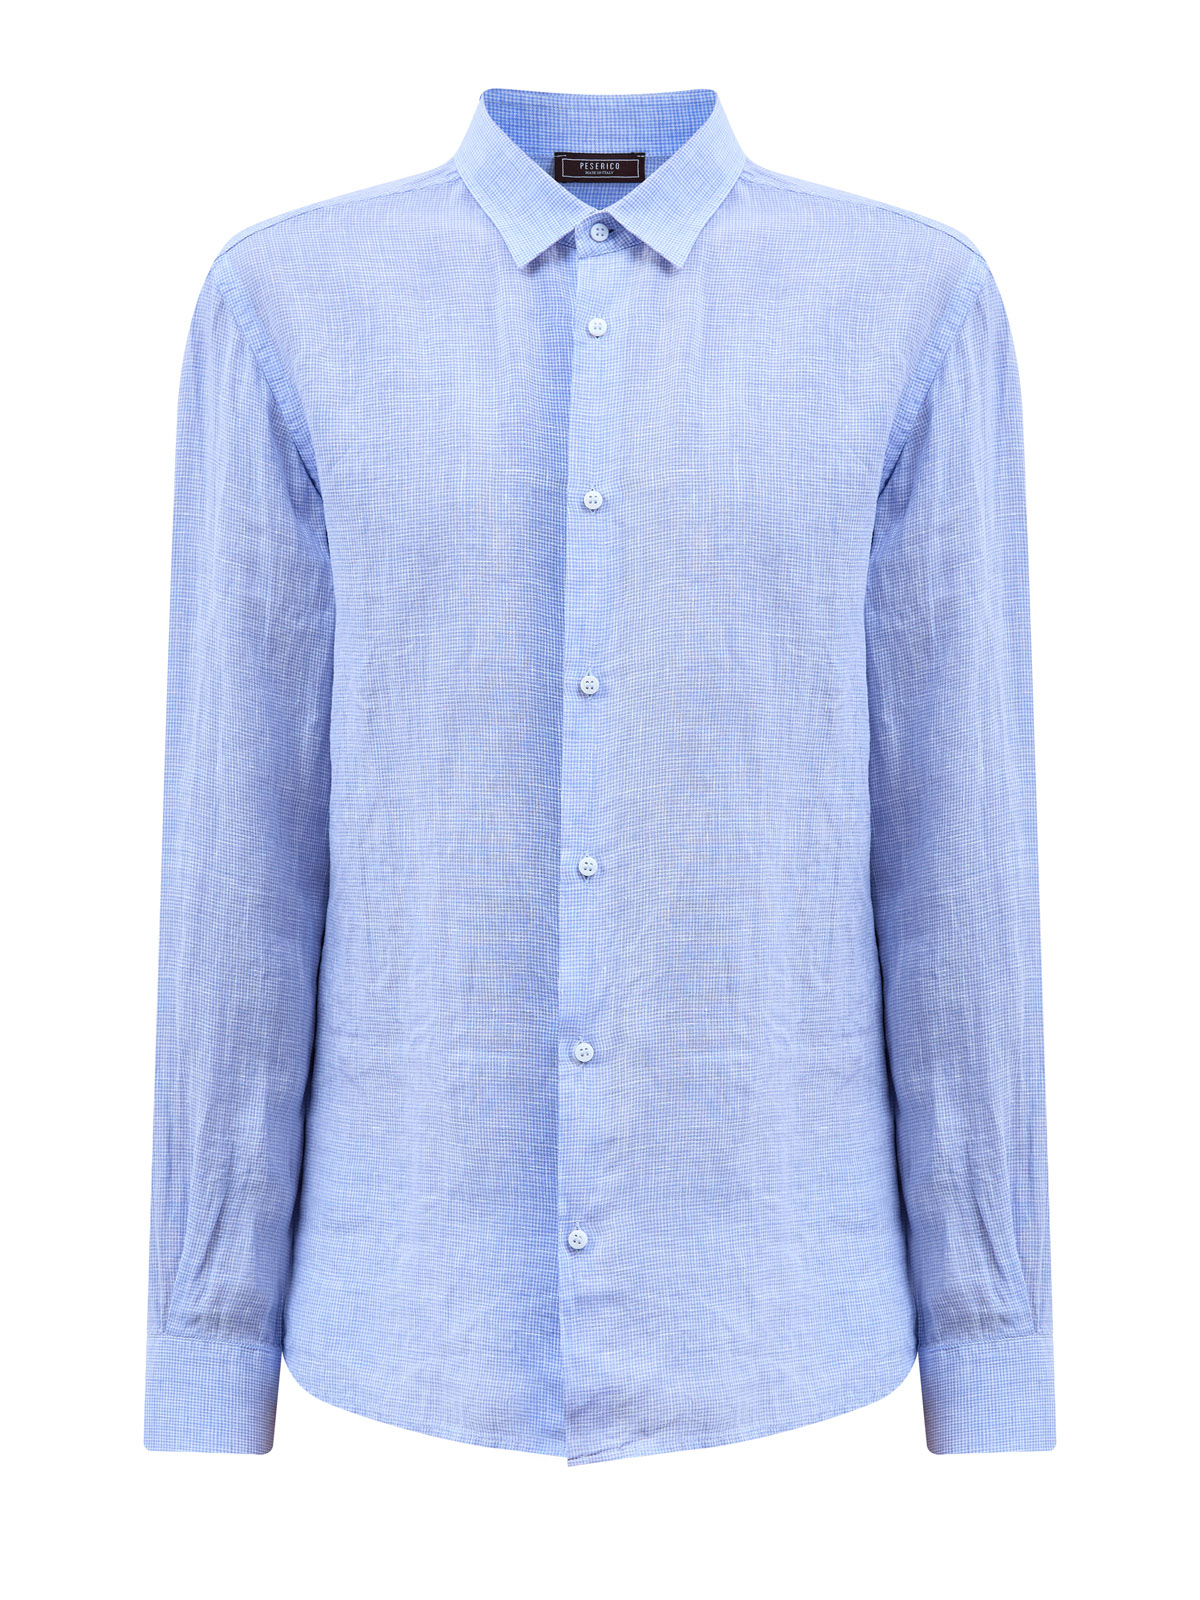 Свободная рубашка из льняной ткани с микро-узором в клетку PESERICO, цвет голубой, размер 50;52;54;56